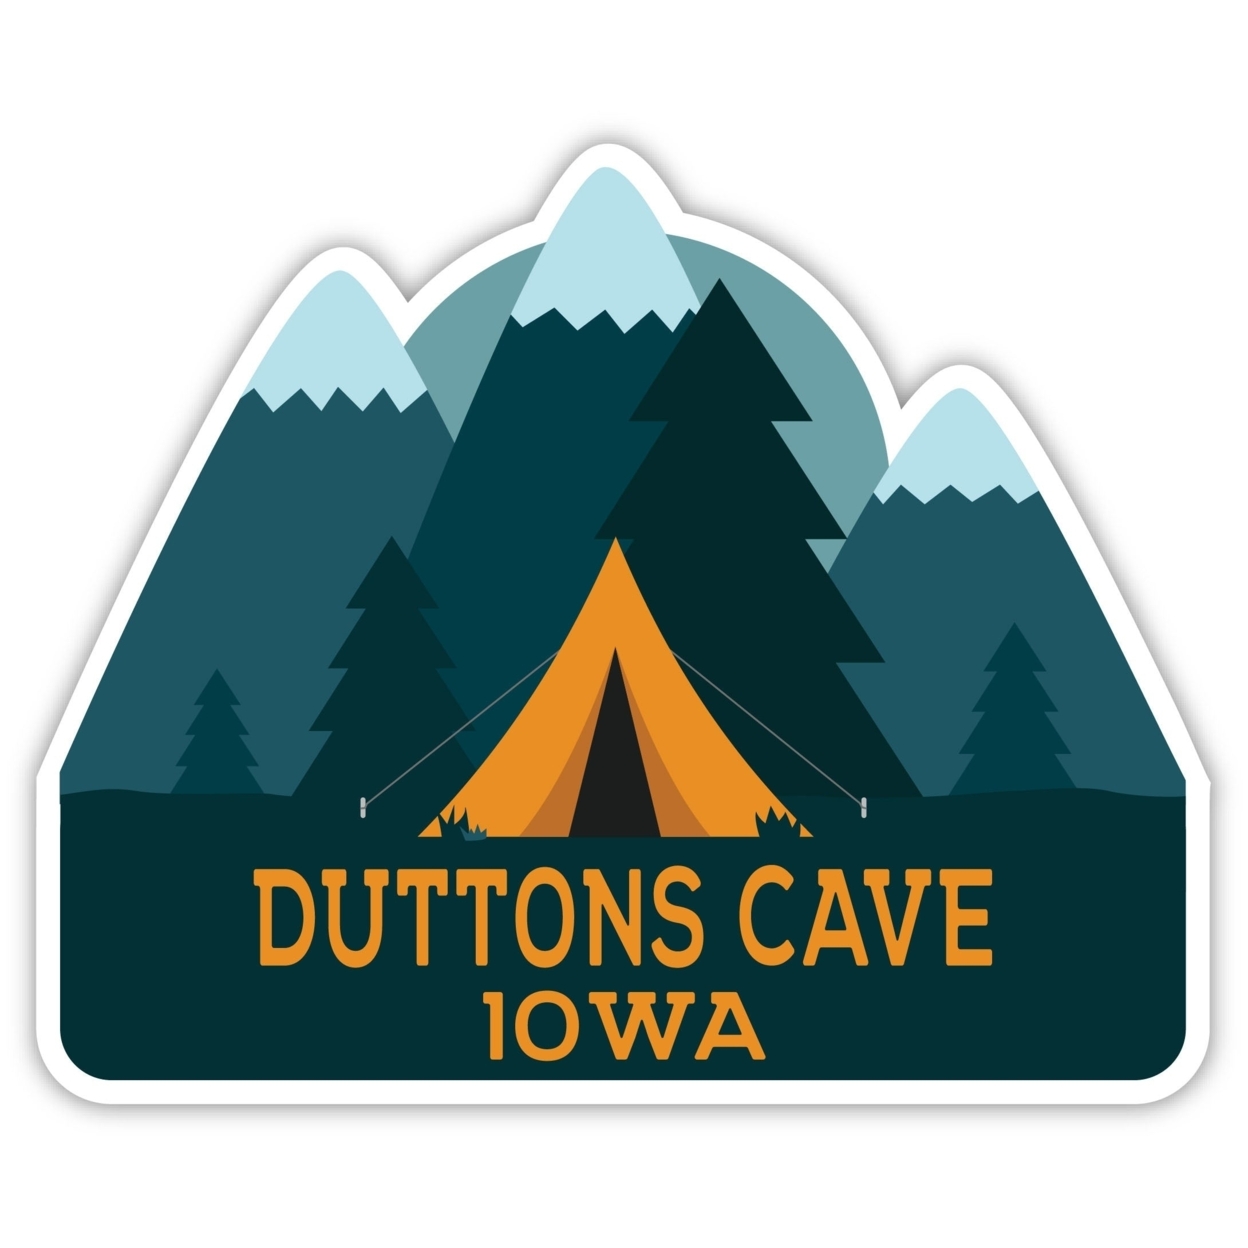 Duttons Cave Iowa Souvenir Decorative Stickers (Choose Theme And Size) - Single Unit, 10-Inch, Tent